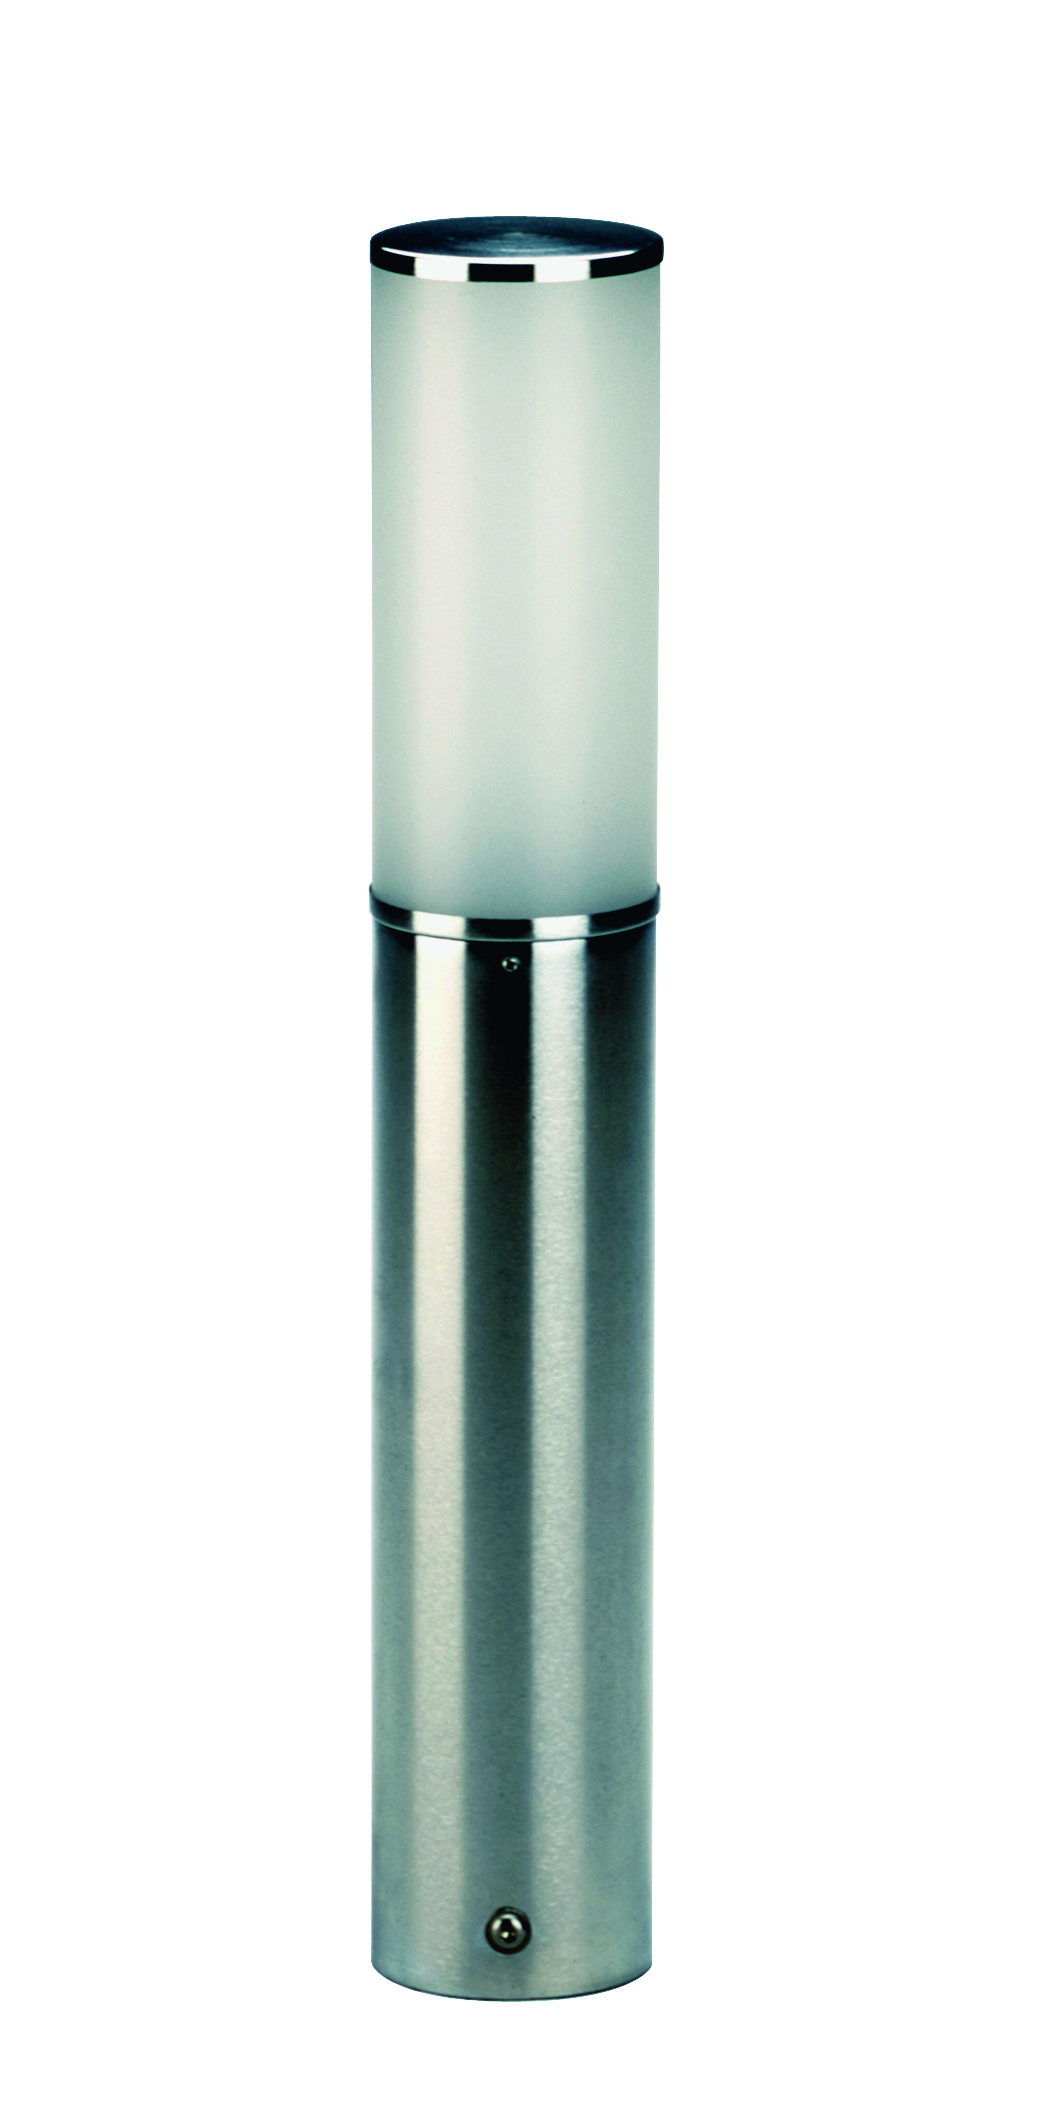 Albert LeuchtenSockelleuchte Typ Nr. 0506 - Edelstahl, für 1 x Lampe max. 20 W, E27